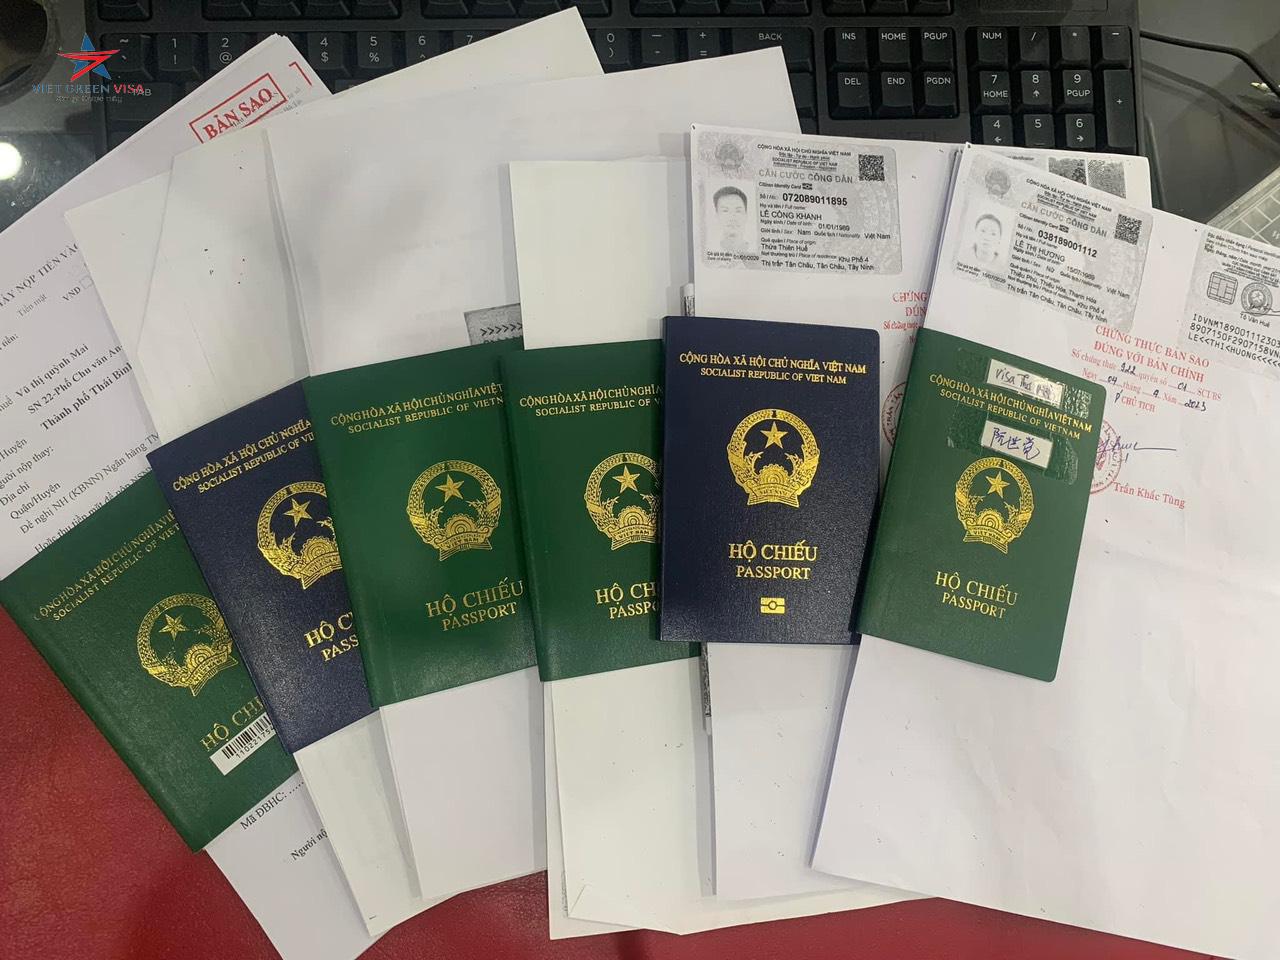 Dịch vụ làm hộ chiếu nhanh tại Lạng Sơn